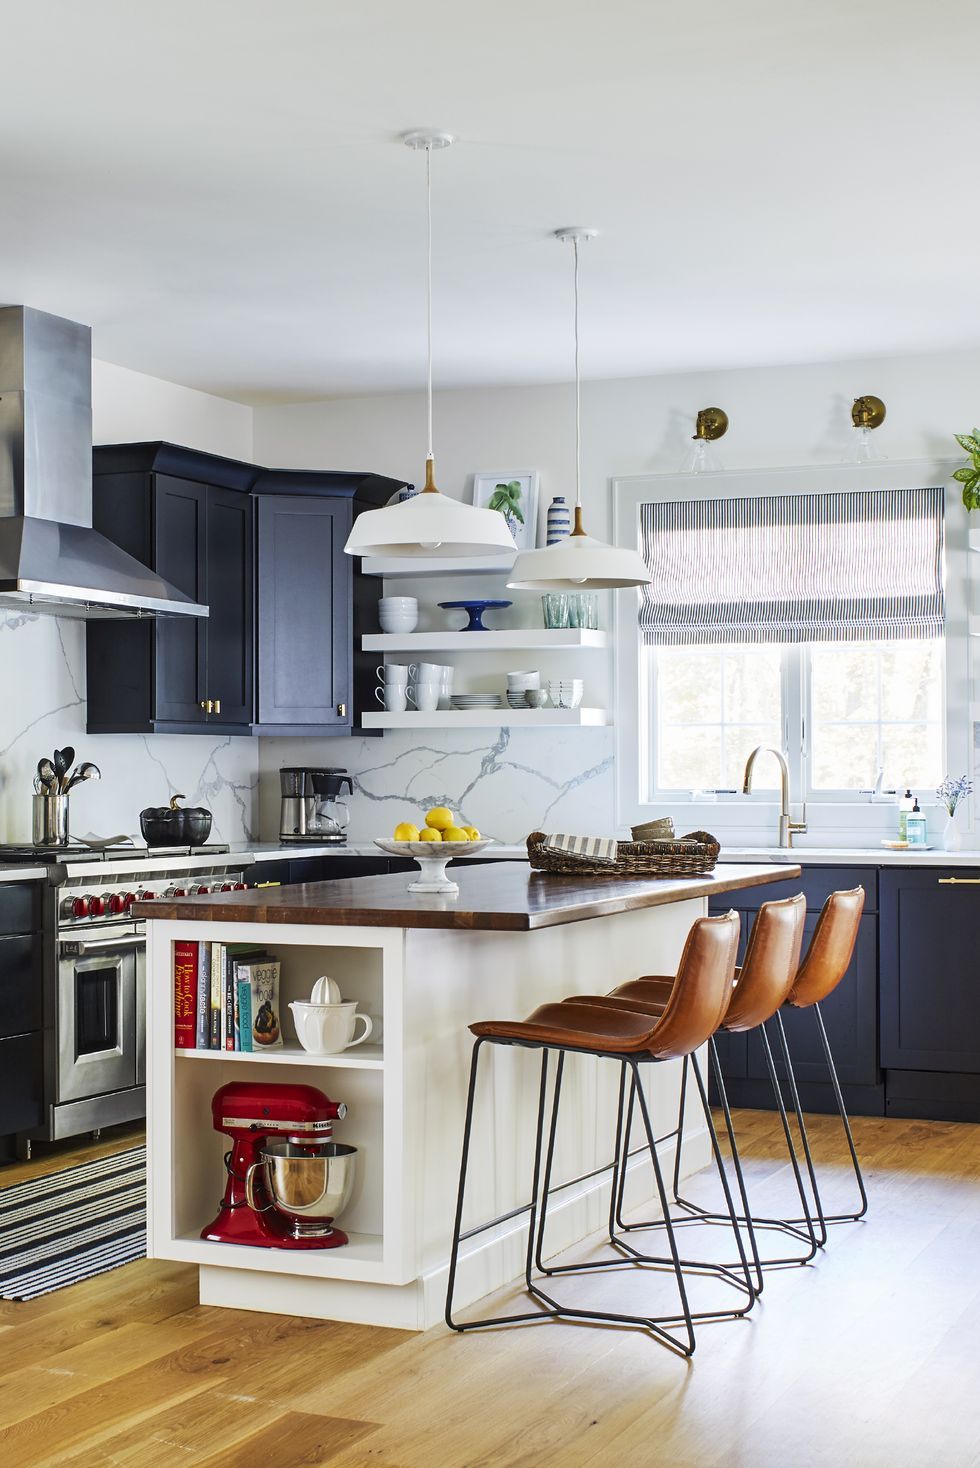 Kitchen Trends 2020 Top 7 Kitchen Interior Design Ideas That Are Here